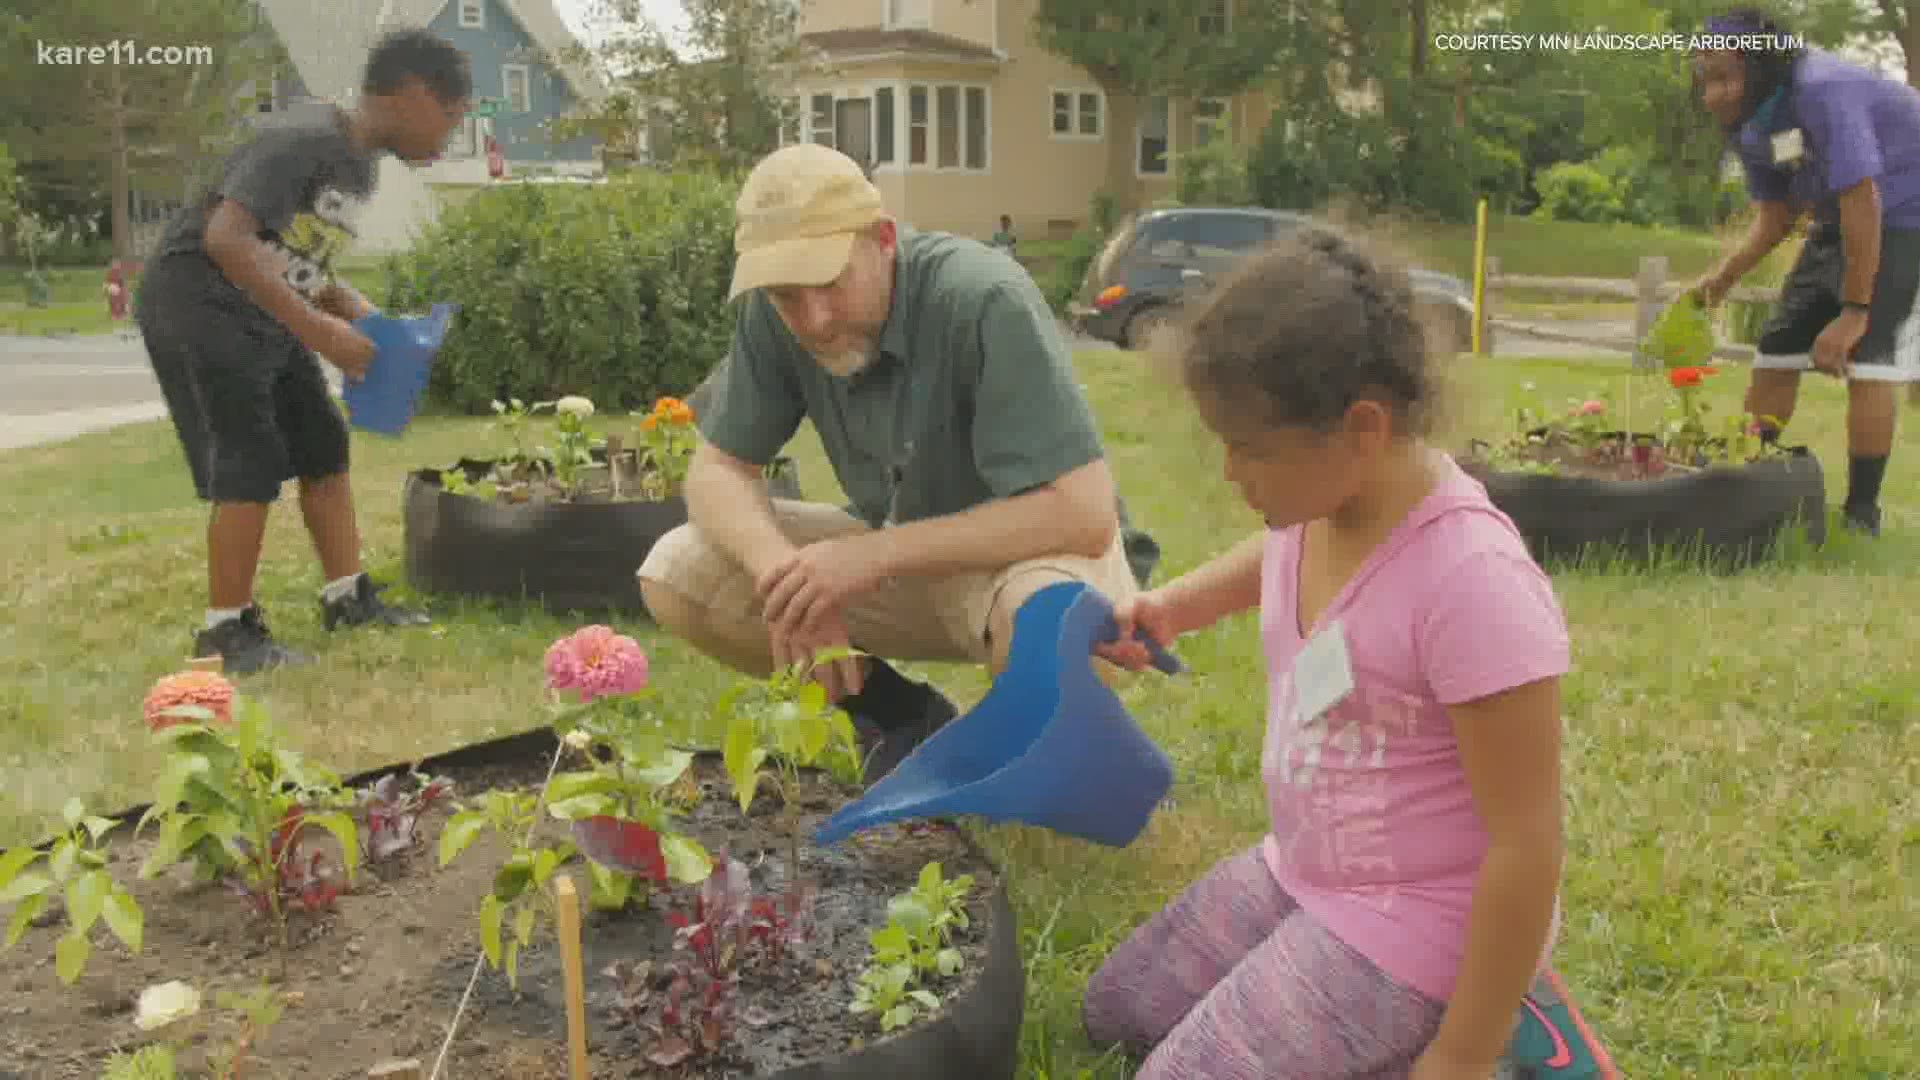 The deadline for applying to this year's Master Gardener program is October 1.